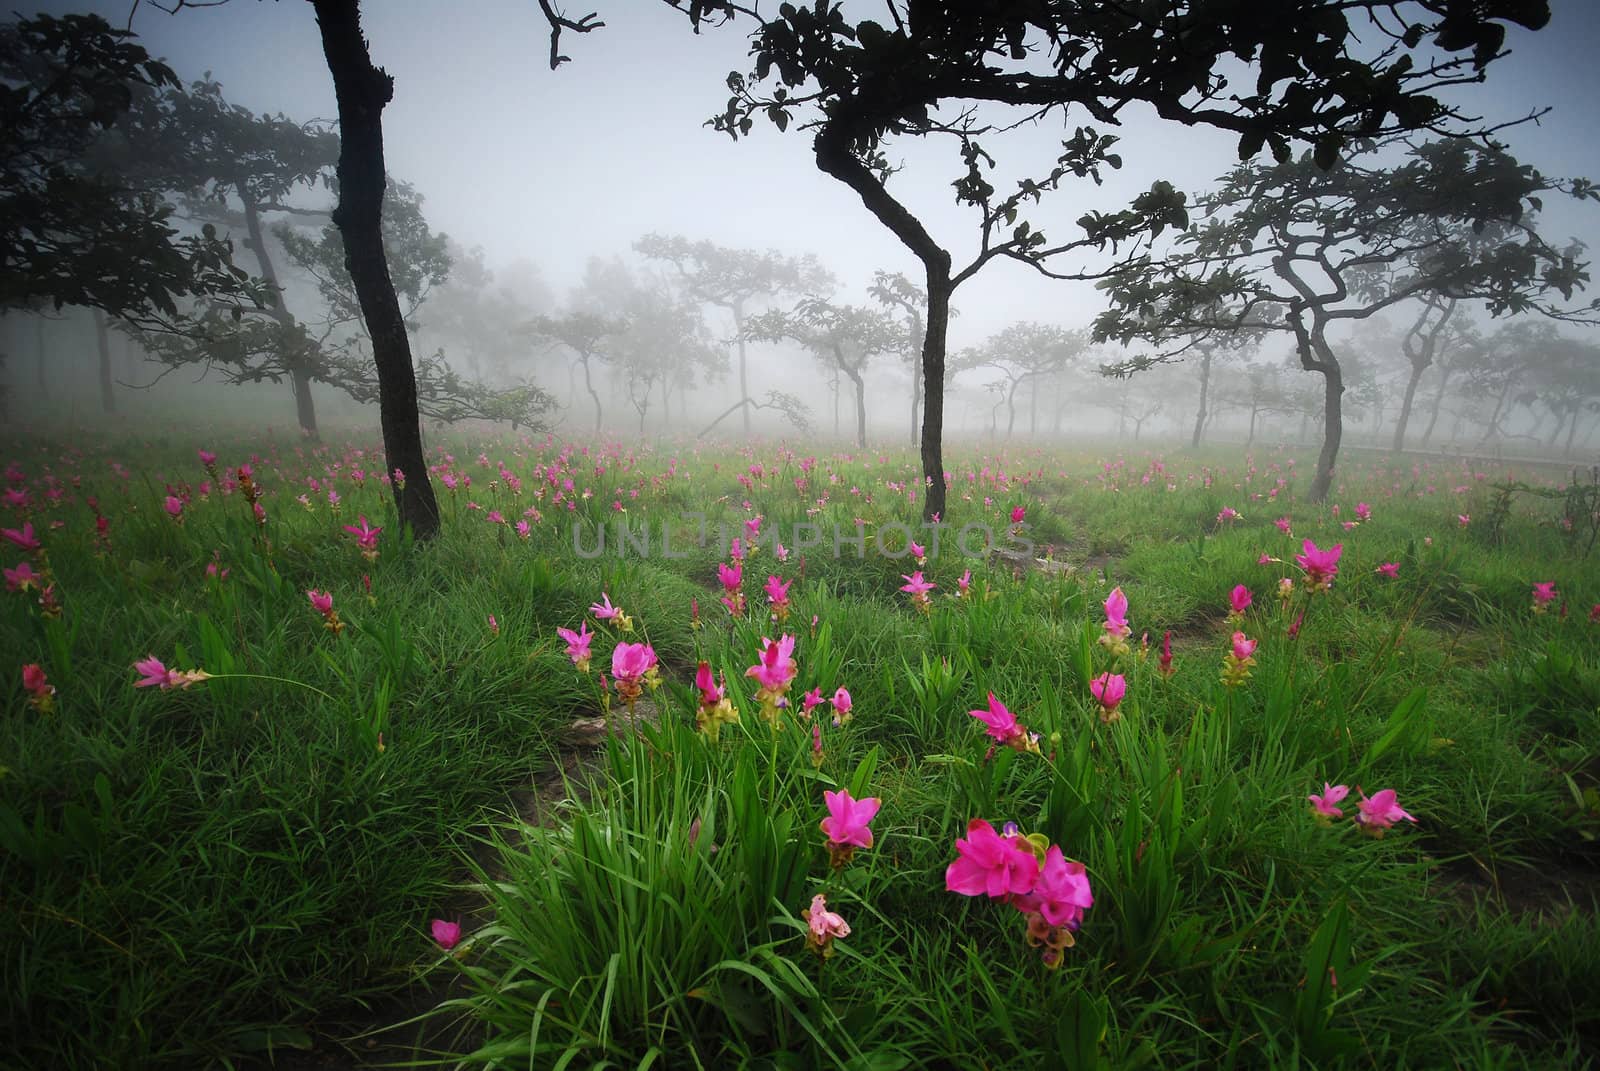 siam tulip wildflower field from Thailand in a mist